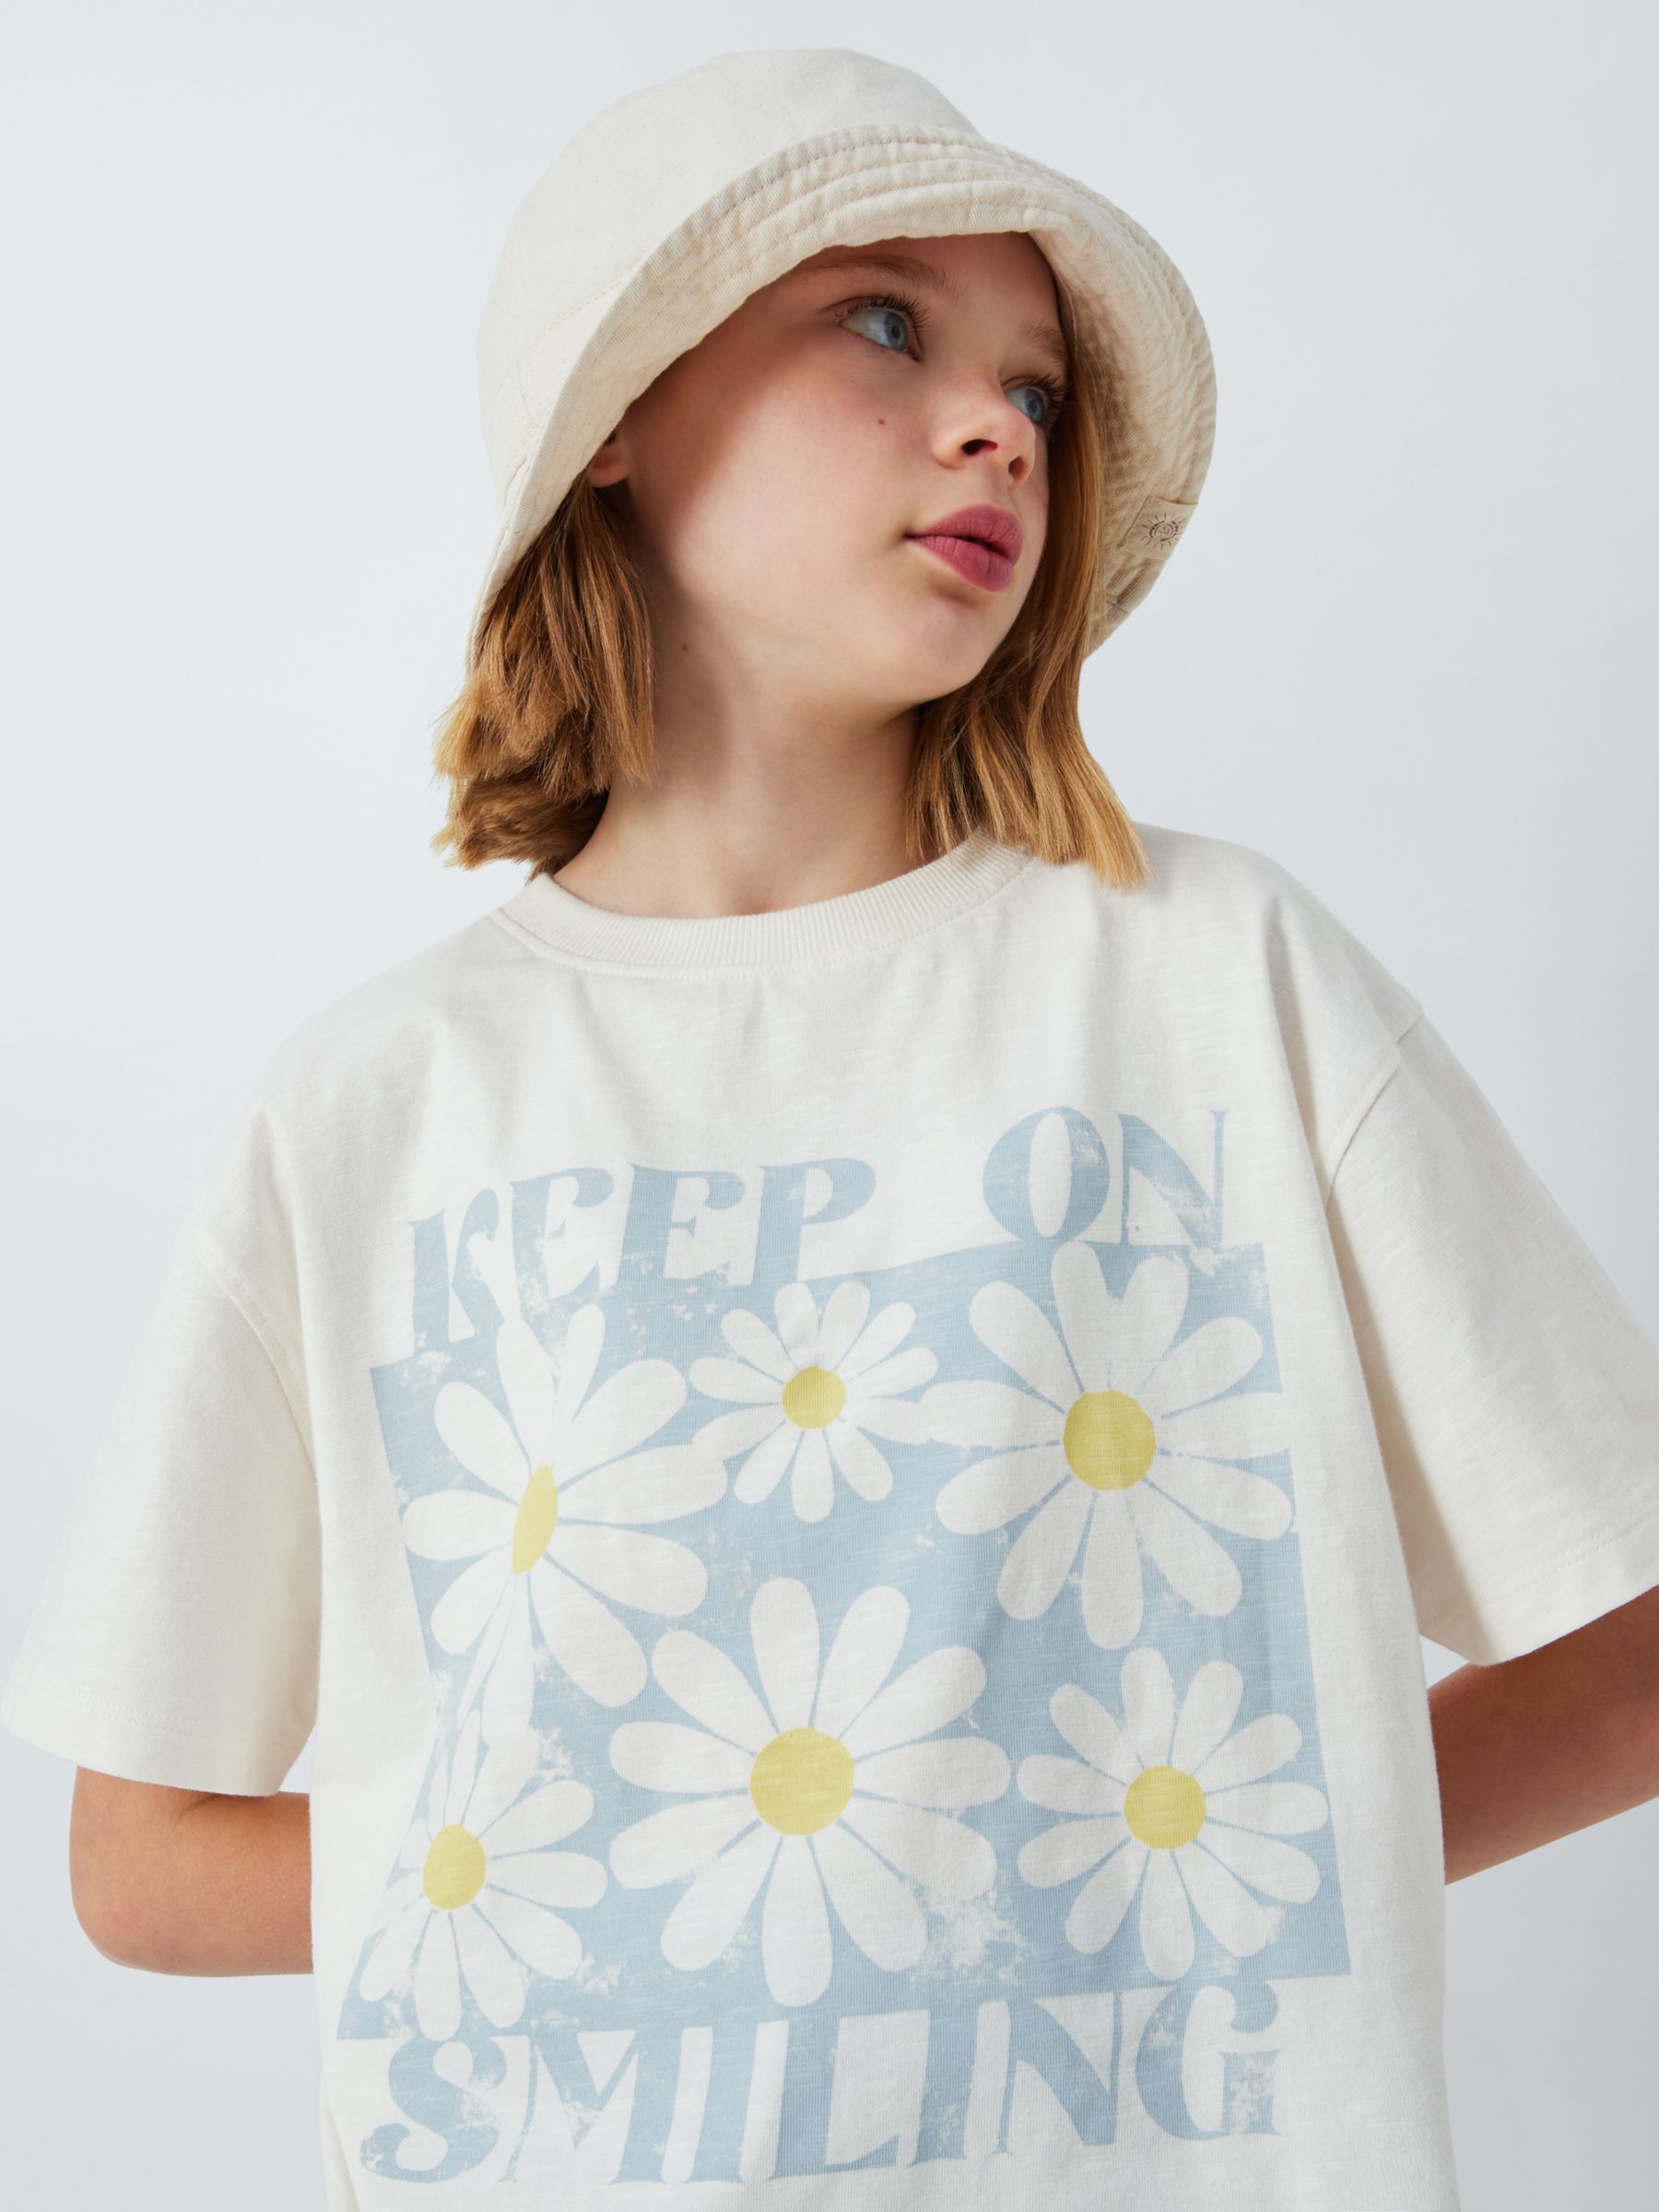 Buy John Lewis Kids' Keep On Smiling T-Shirt, Cream Online at johnlewis.com